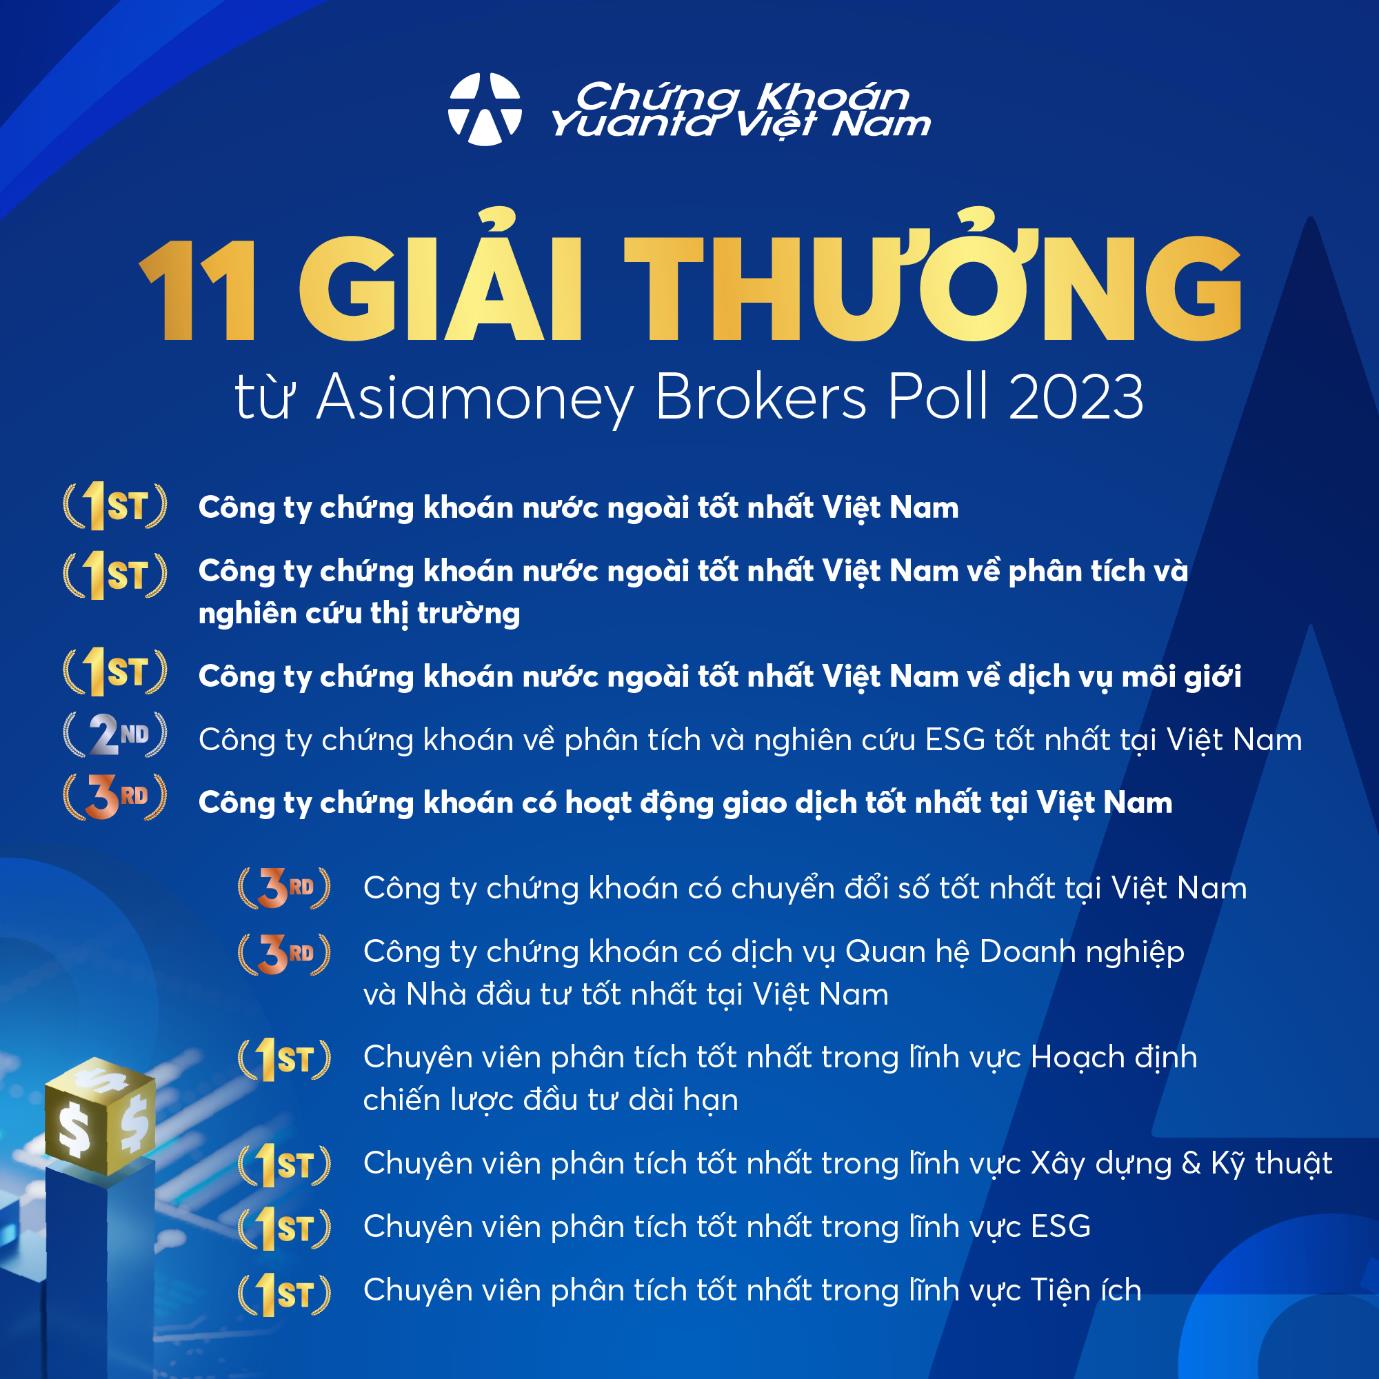 Yuanta Việt Nam gây ấn tượng với 11 giải thưởng tại Asiamoney Brokers Poll 2023 - Ảnh 1.